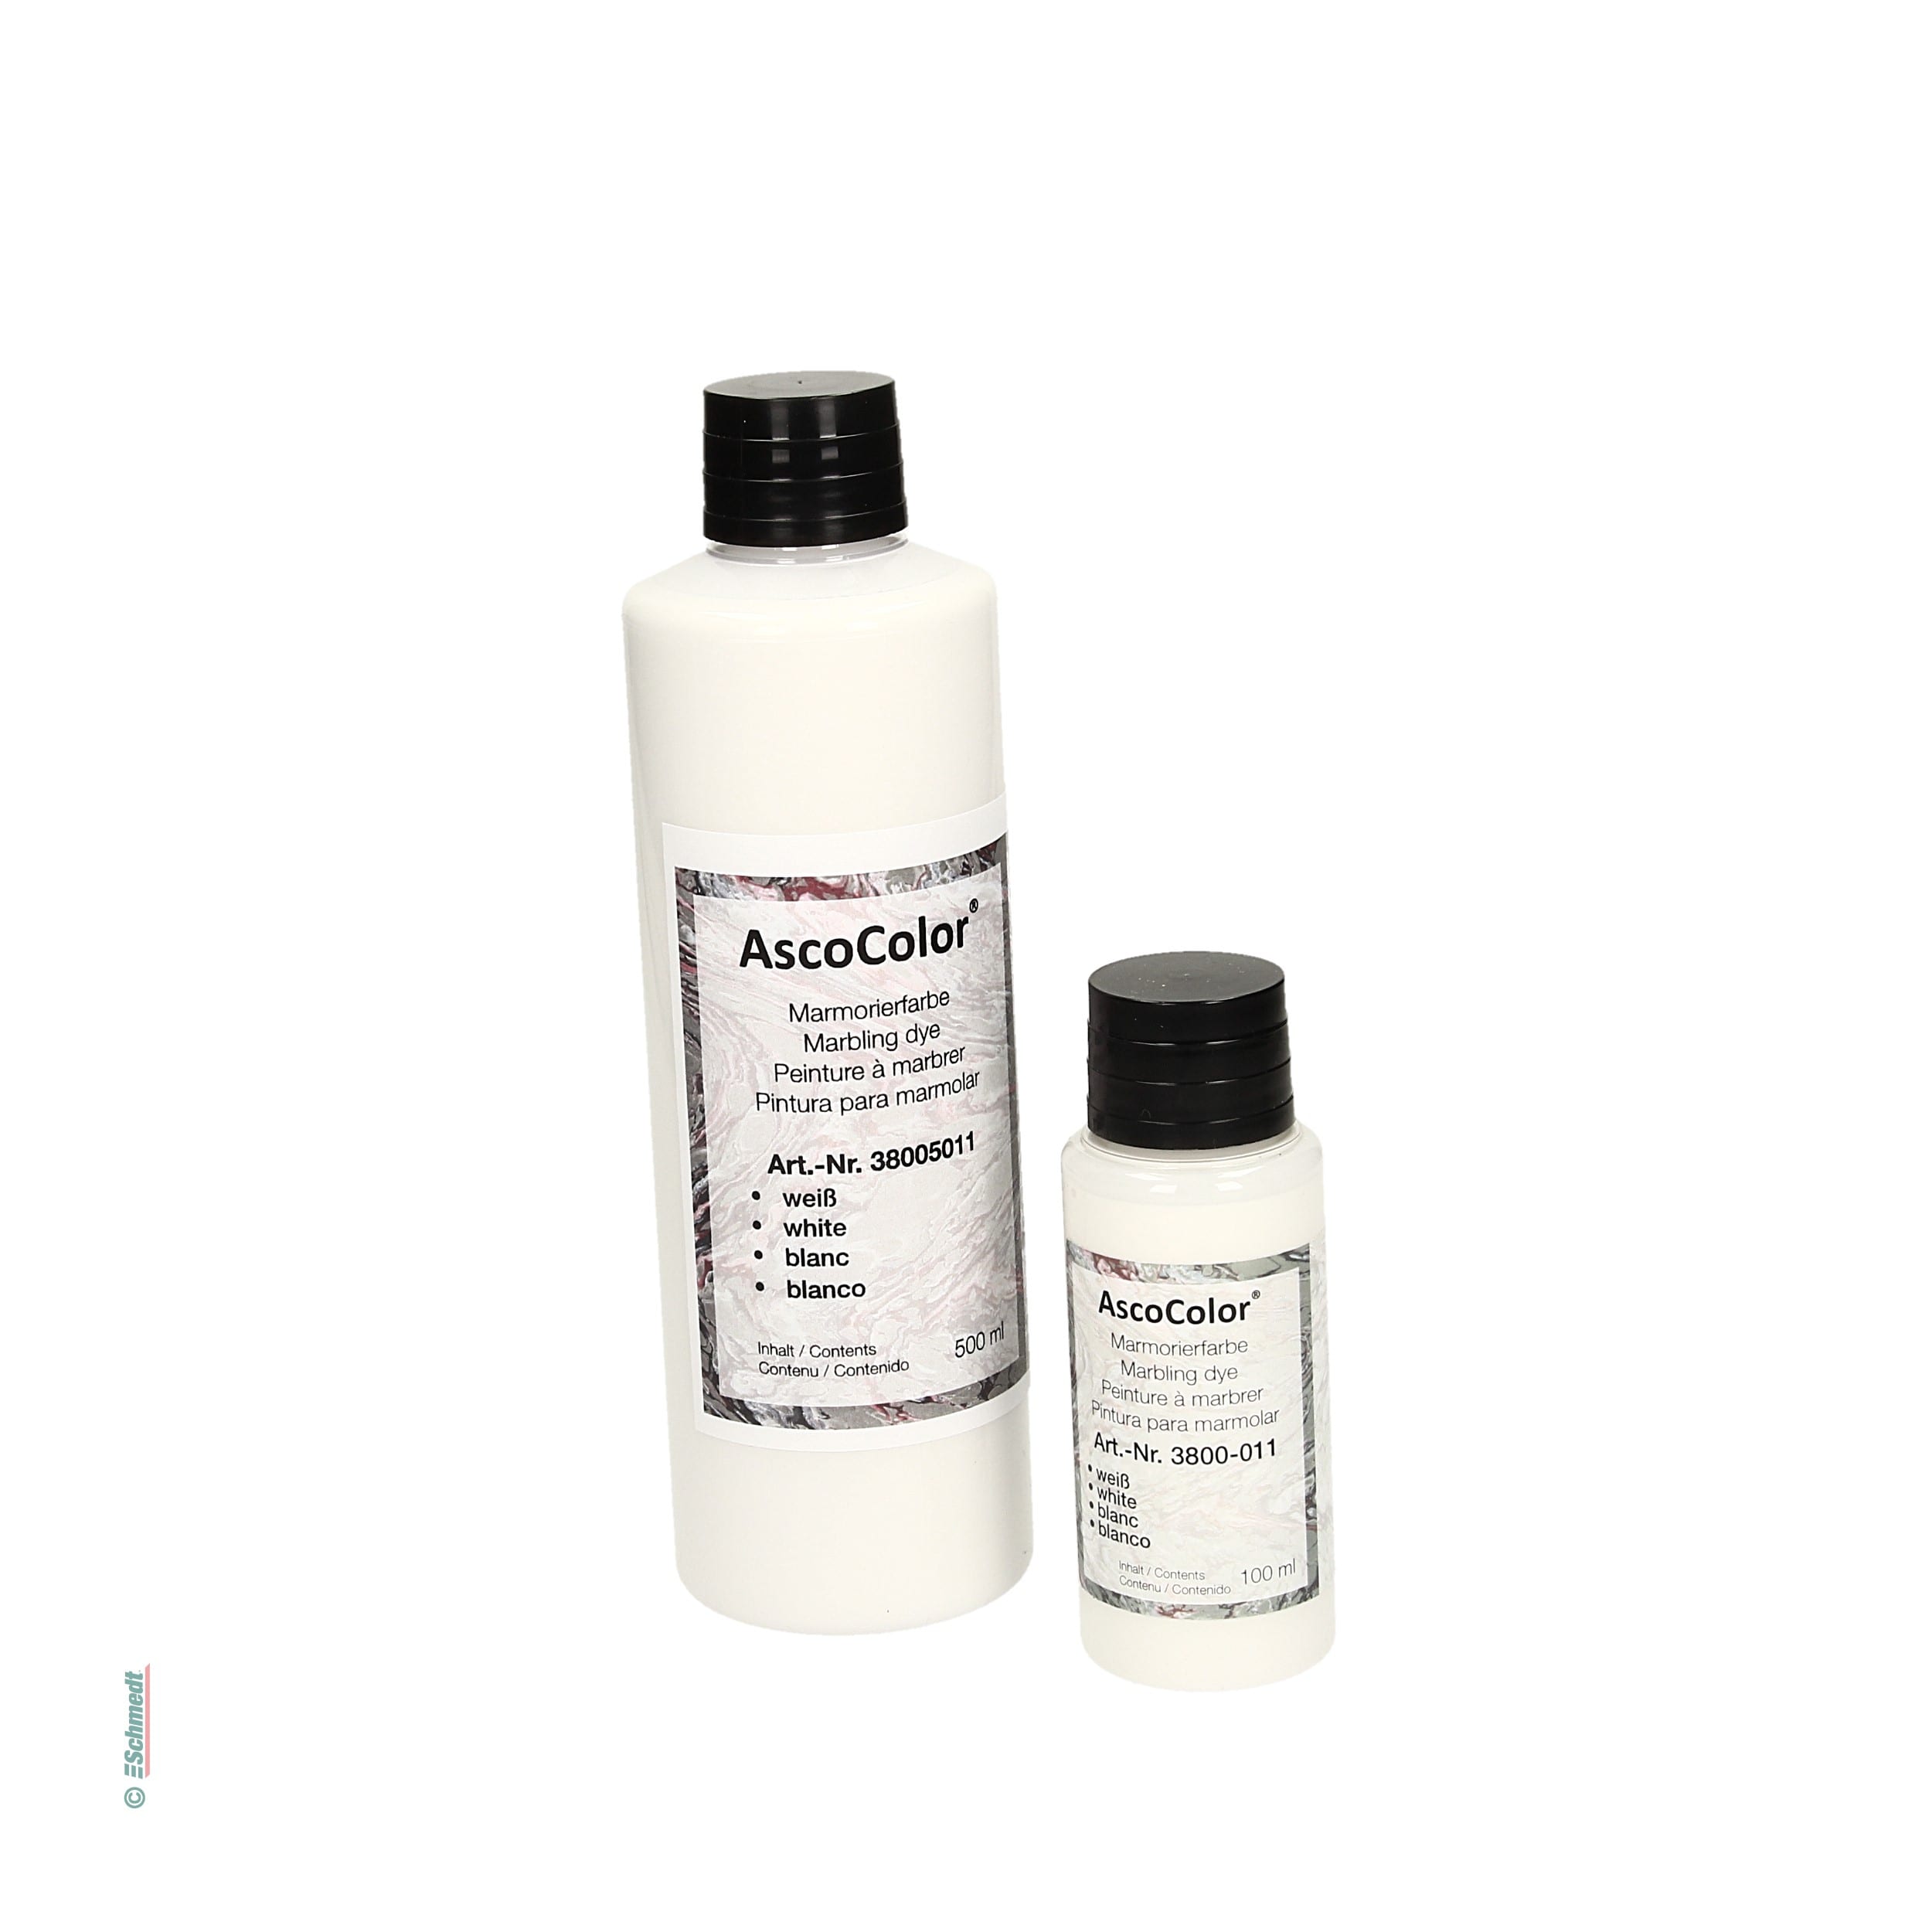 AscoColor® Marmorierfarbe - Farbe weiß - Gebindegröße Flasche / 500 ml - zur Herstellung marmorierter Papiere... - Bild-1